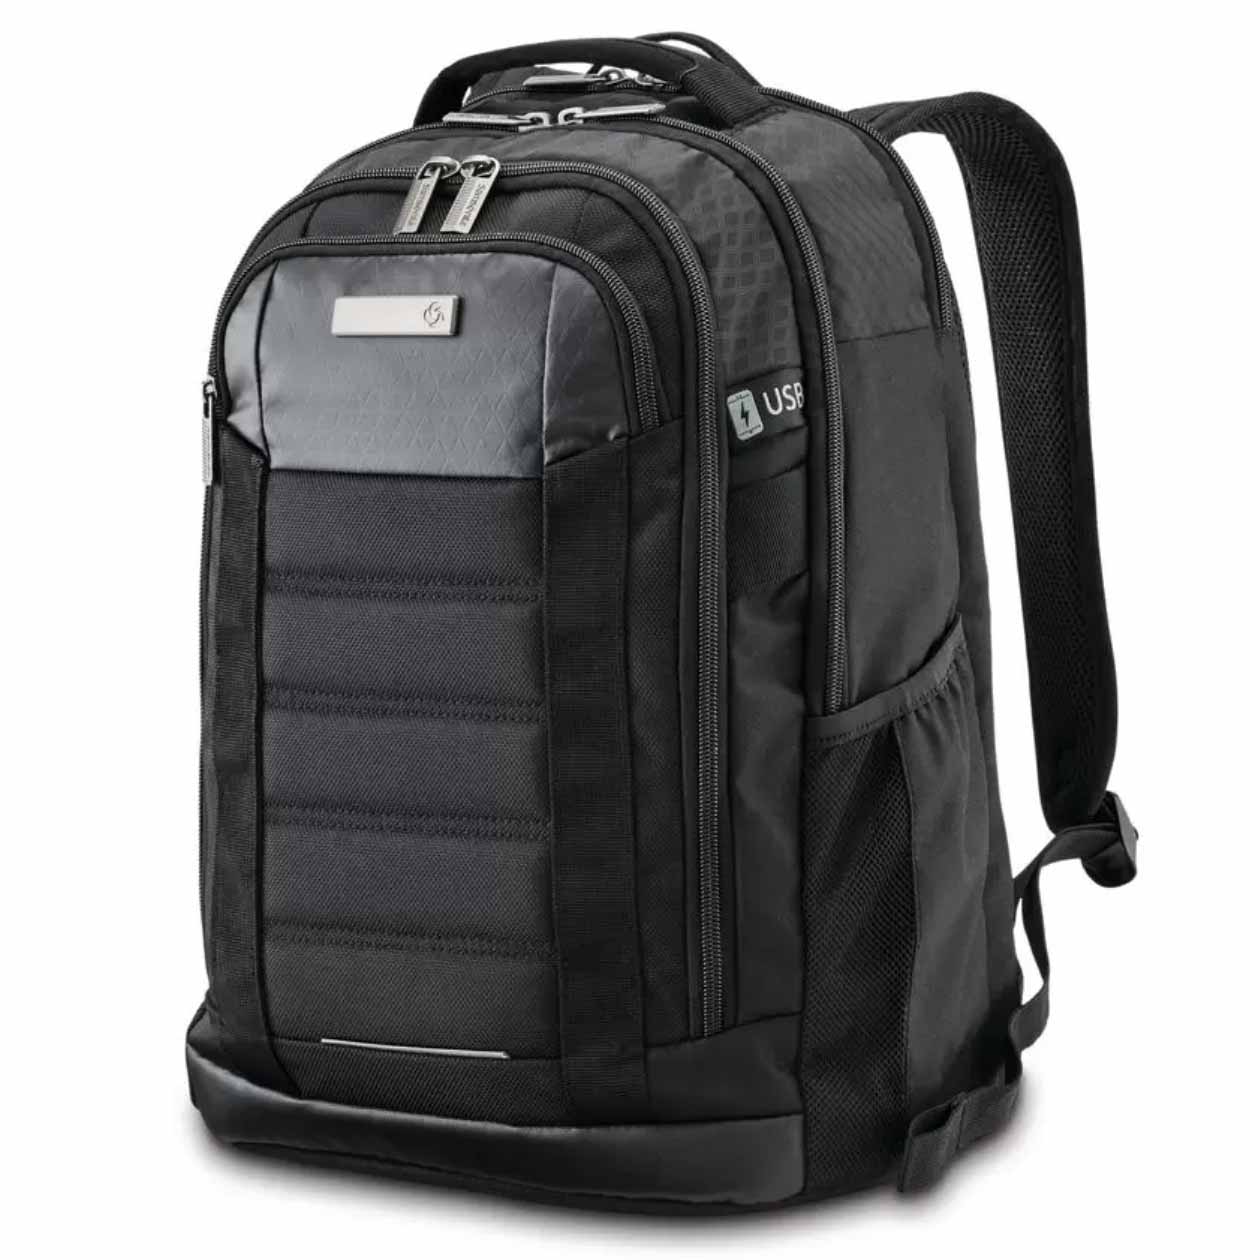 Sturdy Samsonite backpack in black